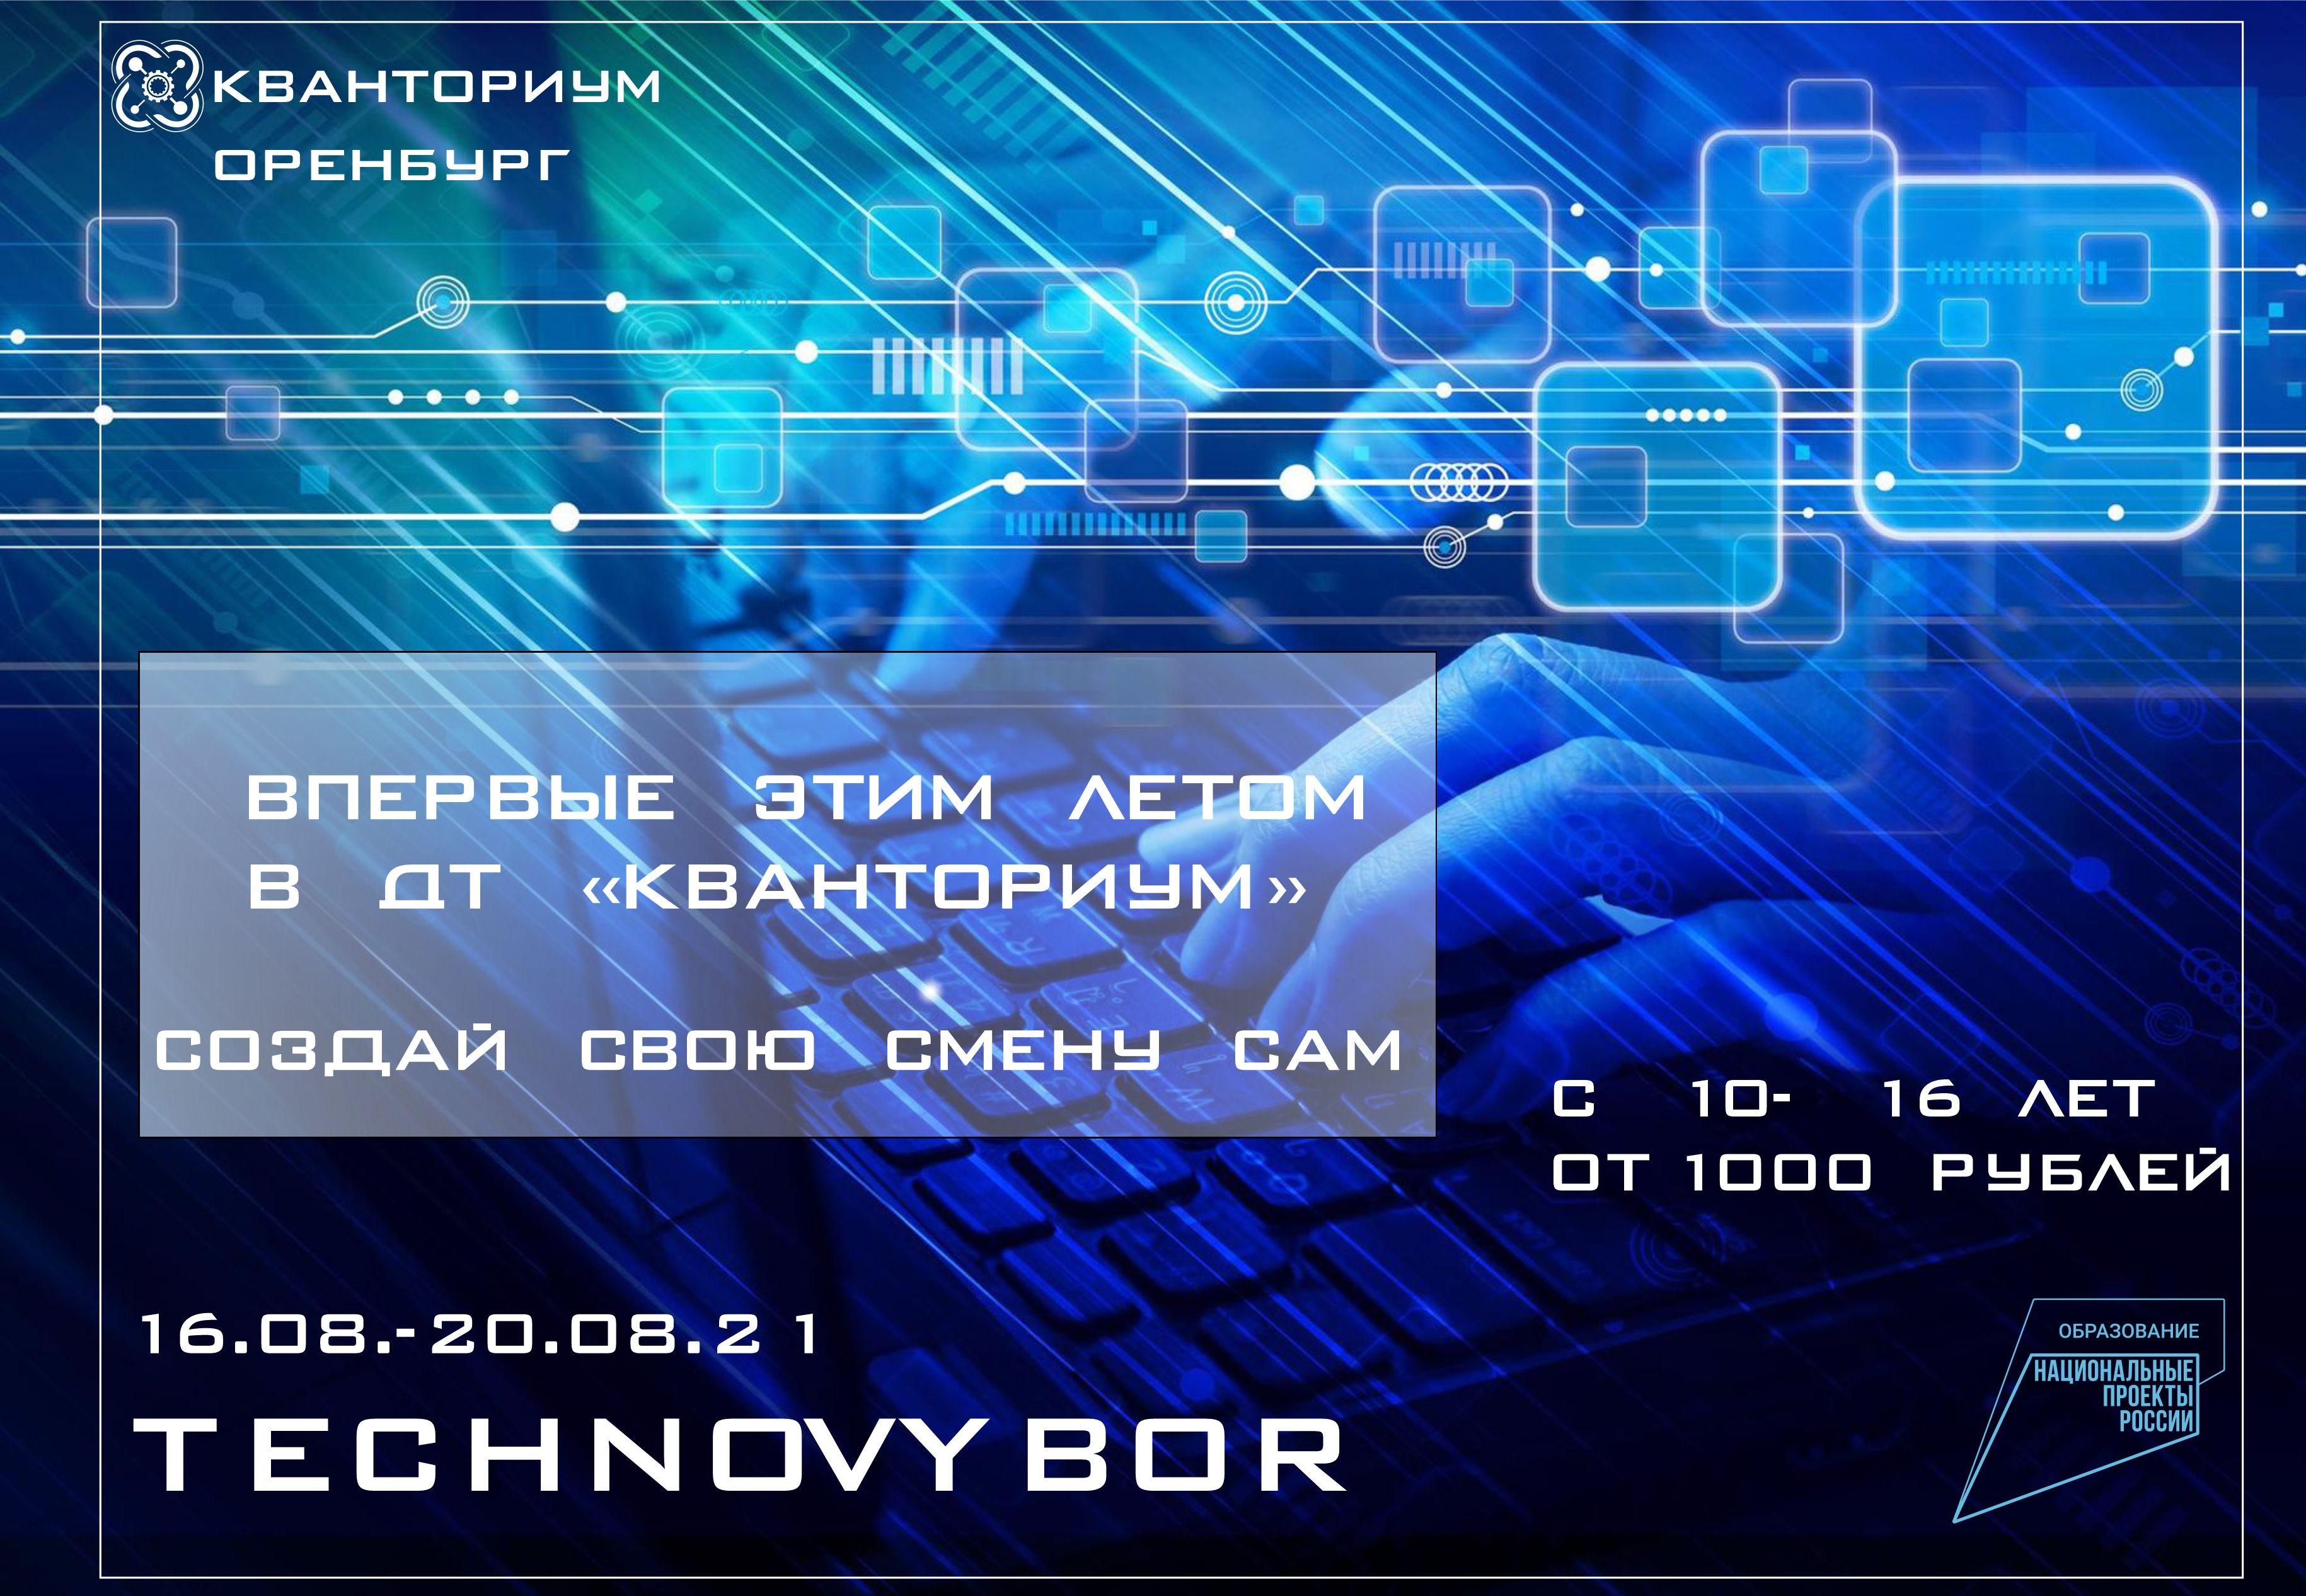 Впервые эти летом в ДТ "КВанториум" , сделай свой свой TECHNOVYBOR!